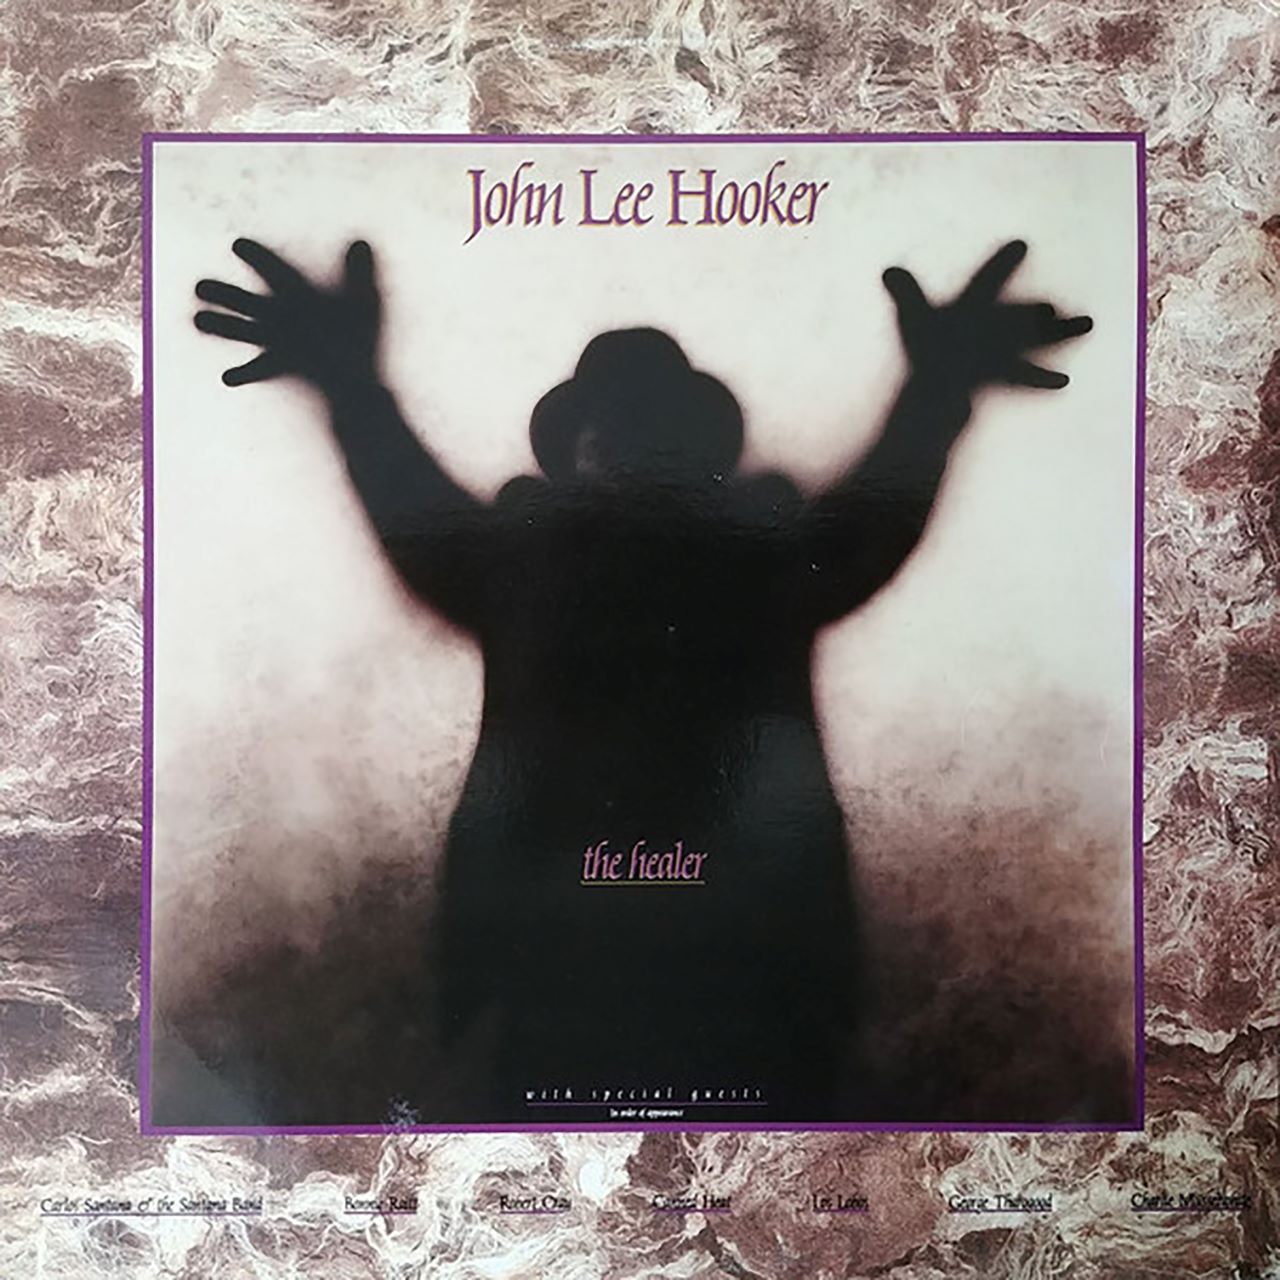 John Lee Hooker – “The Healer” cover album